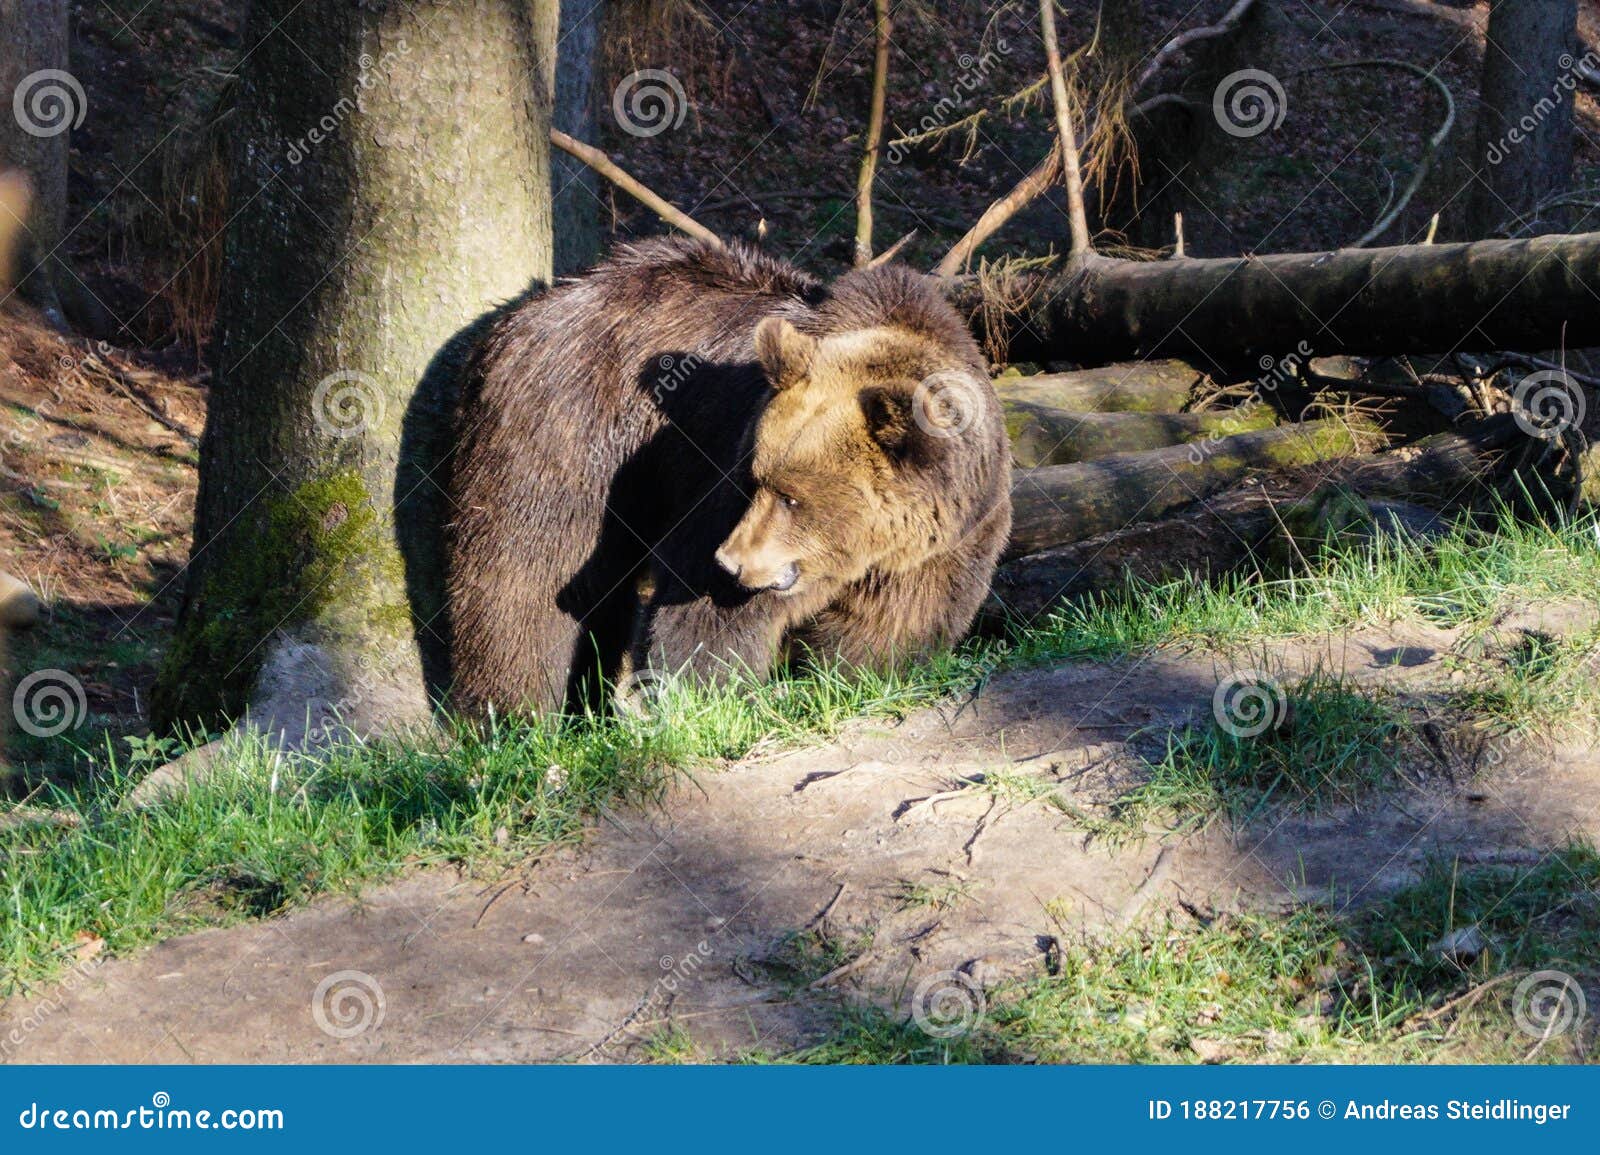 a brown bear